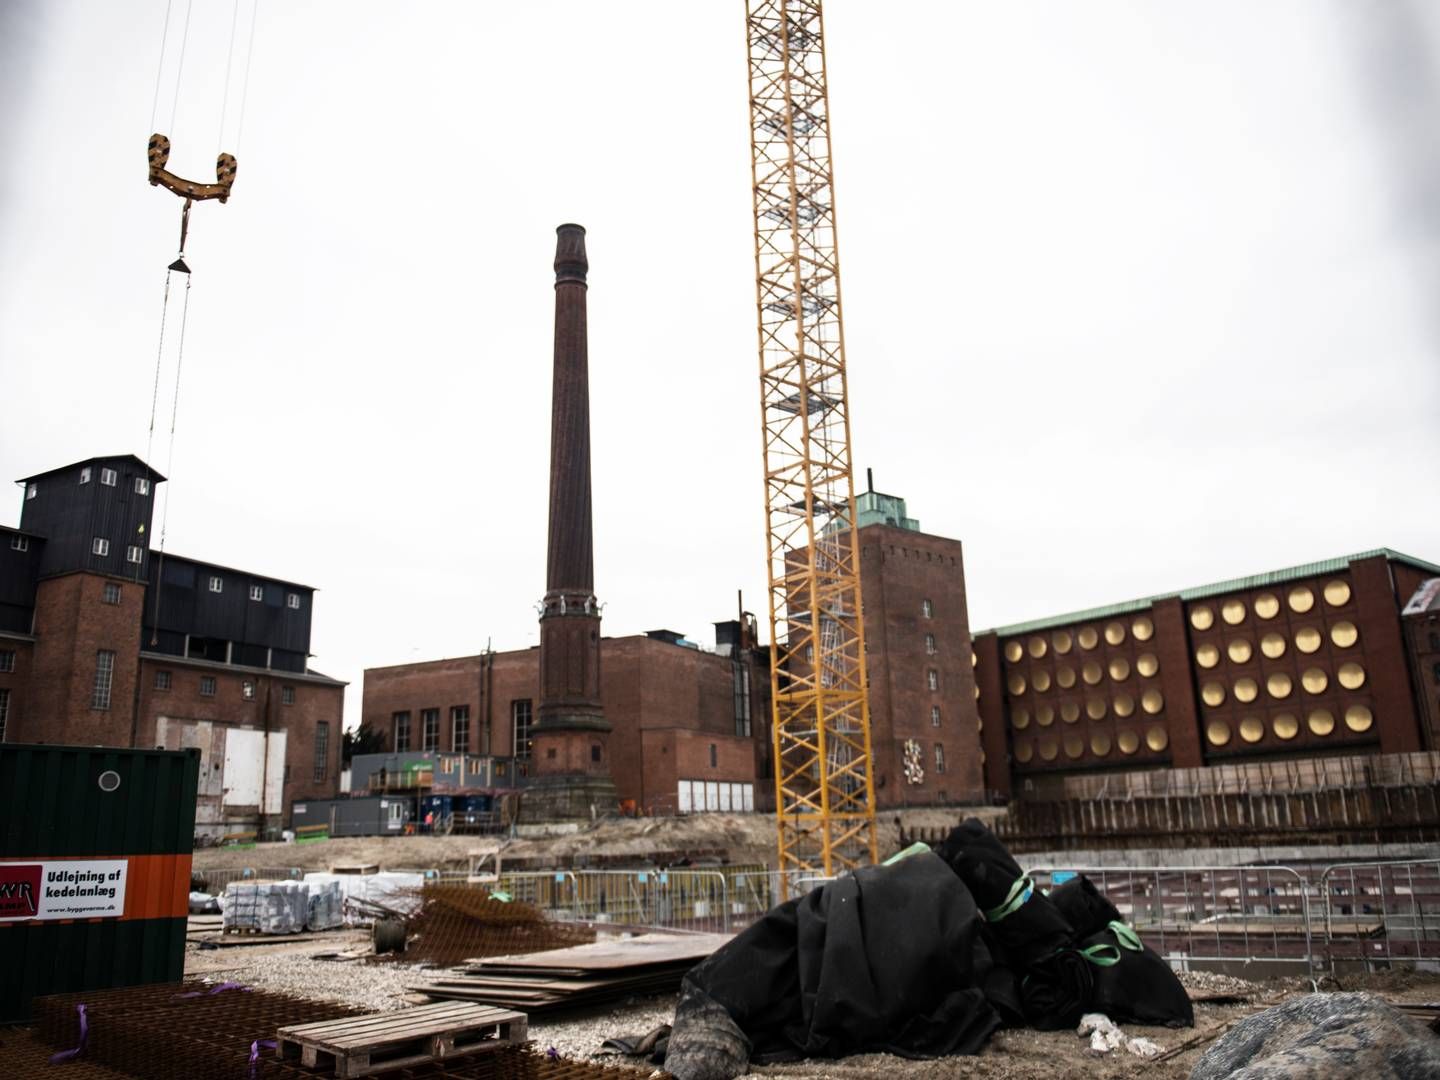 Byggeriet har i længere tid været præget af økonomisk usikkerhed. | Foto: Casper Holmenlund Christensen